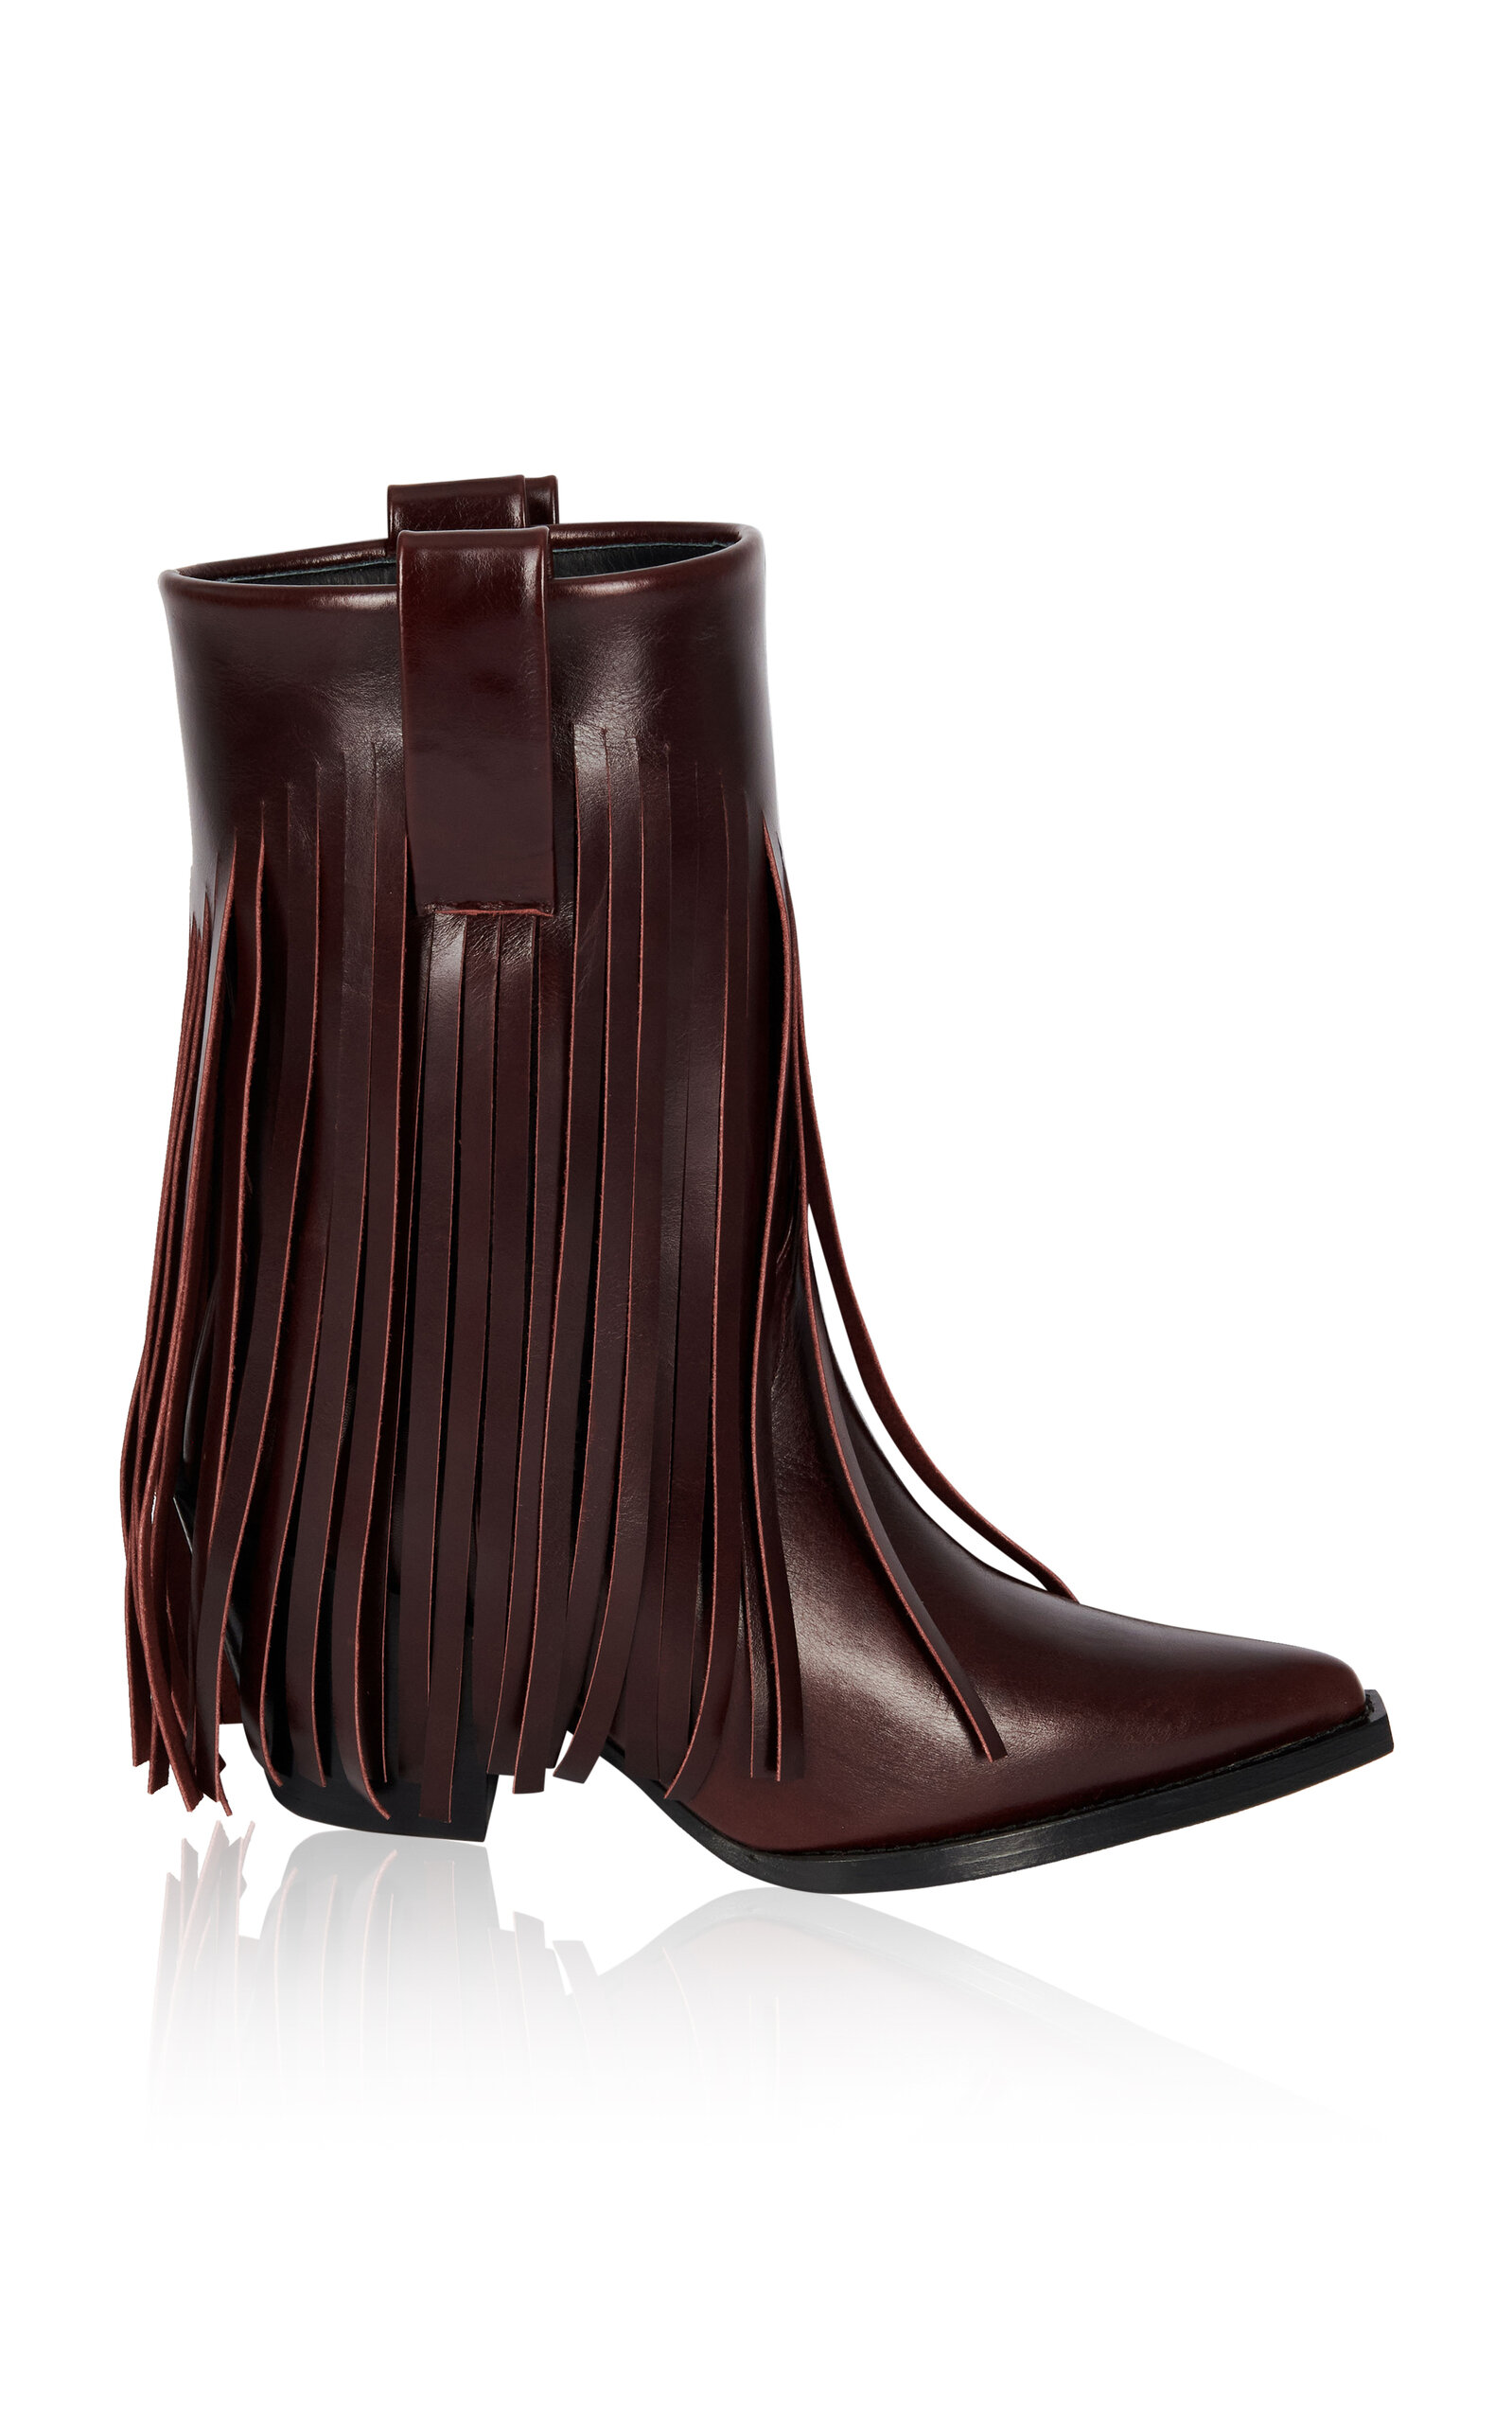 FILLES Ã PAPA Exclusive Janis Fringed Leather Low Western Boots